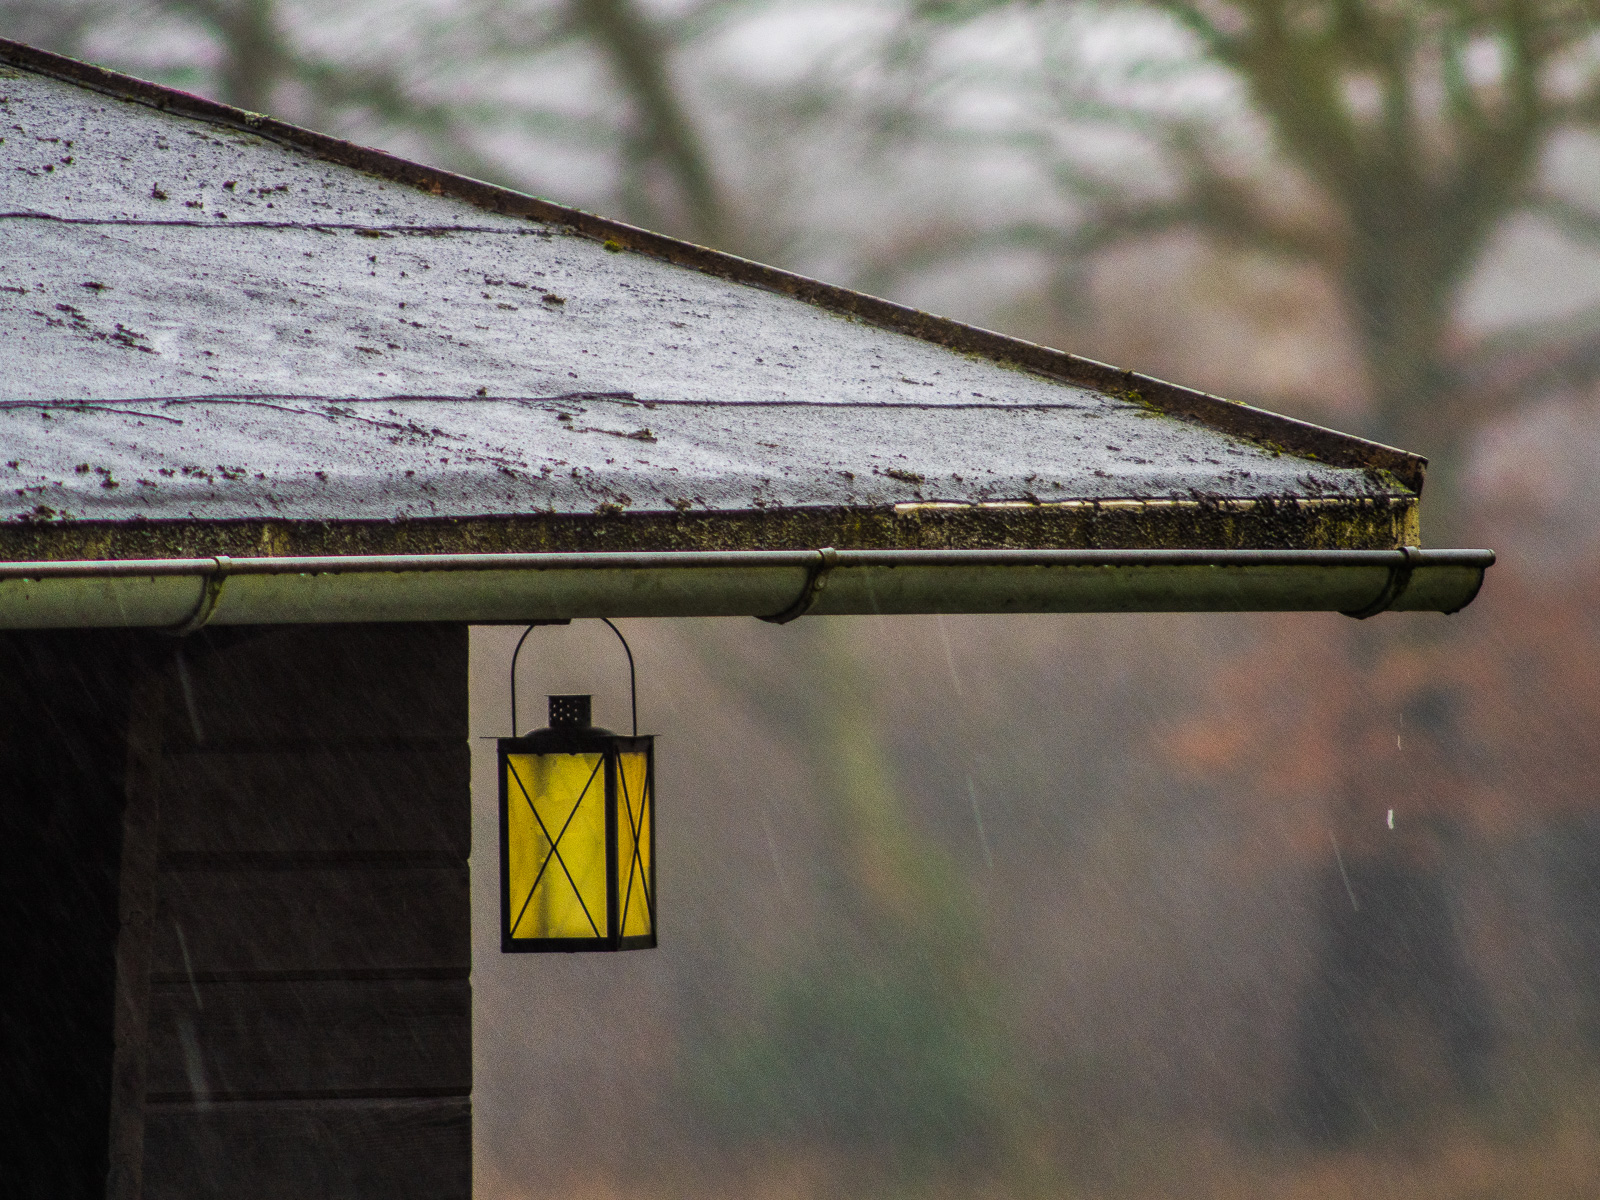 Das Blechdach einer einfachen Hütte im Regen. Unter dem Dachvorsprung hängt eine Laterne mit leuchtend gleber Verglasung.